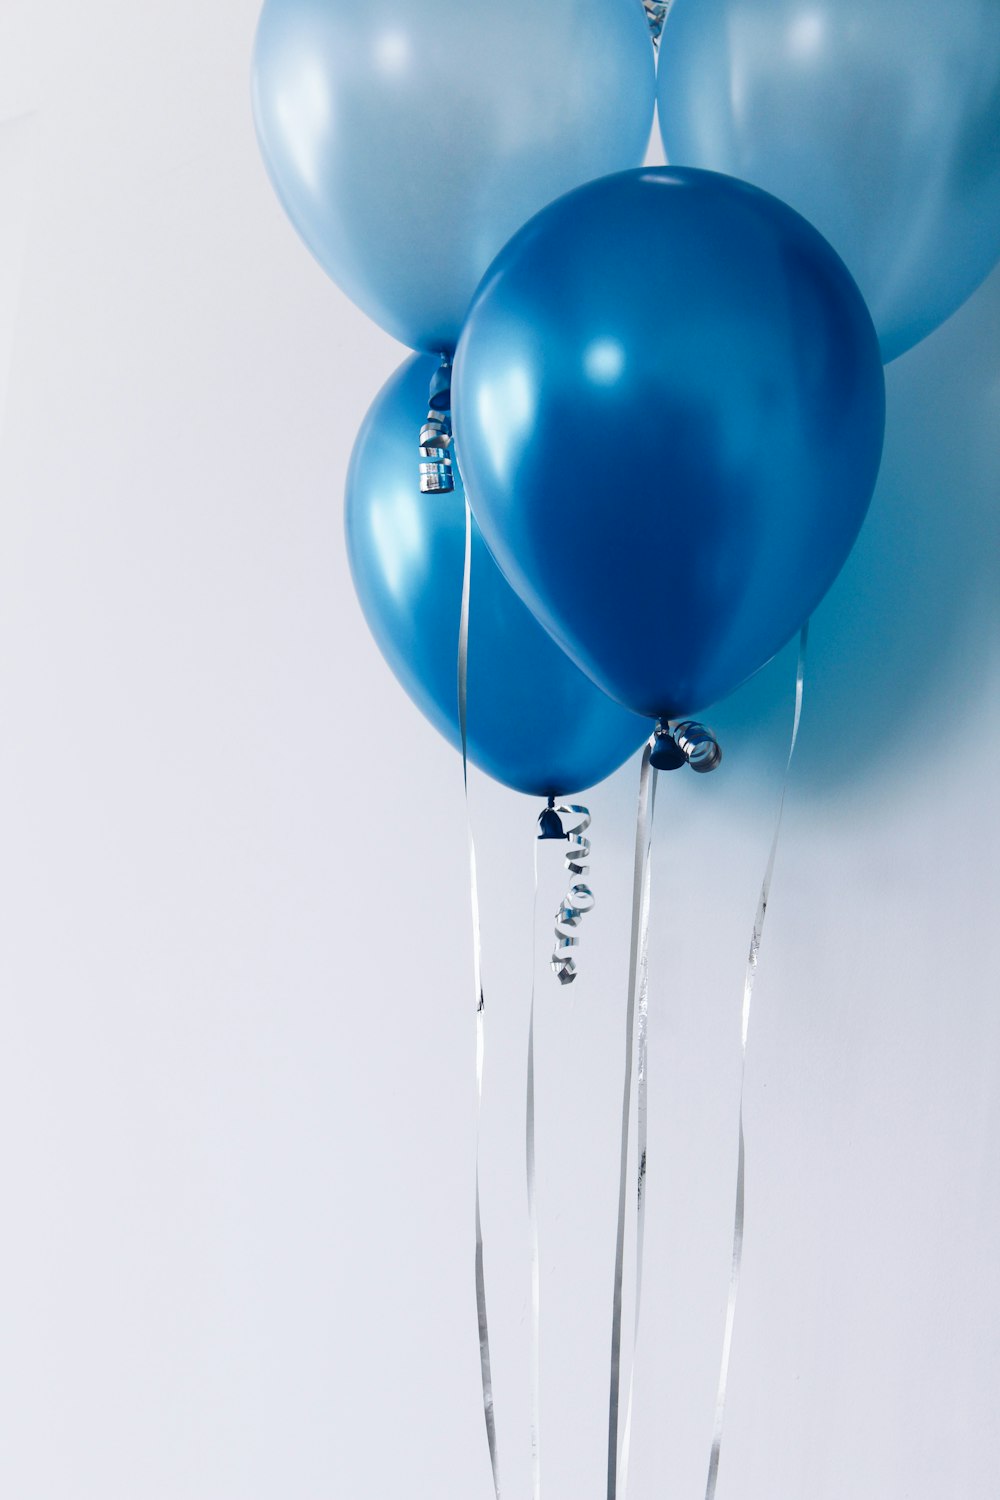 cuatro globos azules cerca de la pared blanca